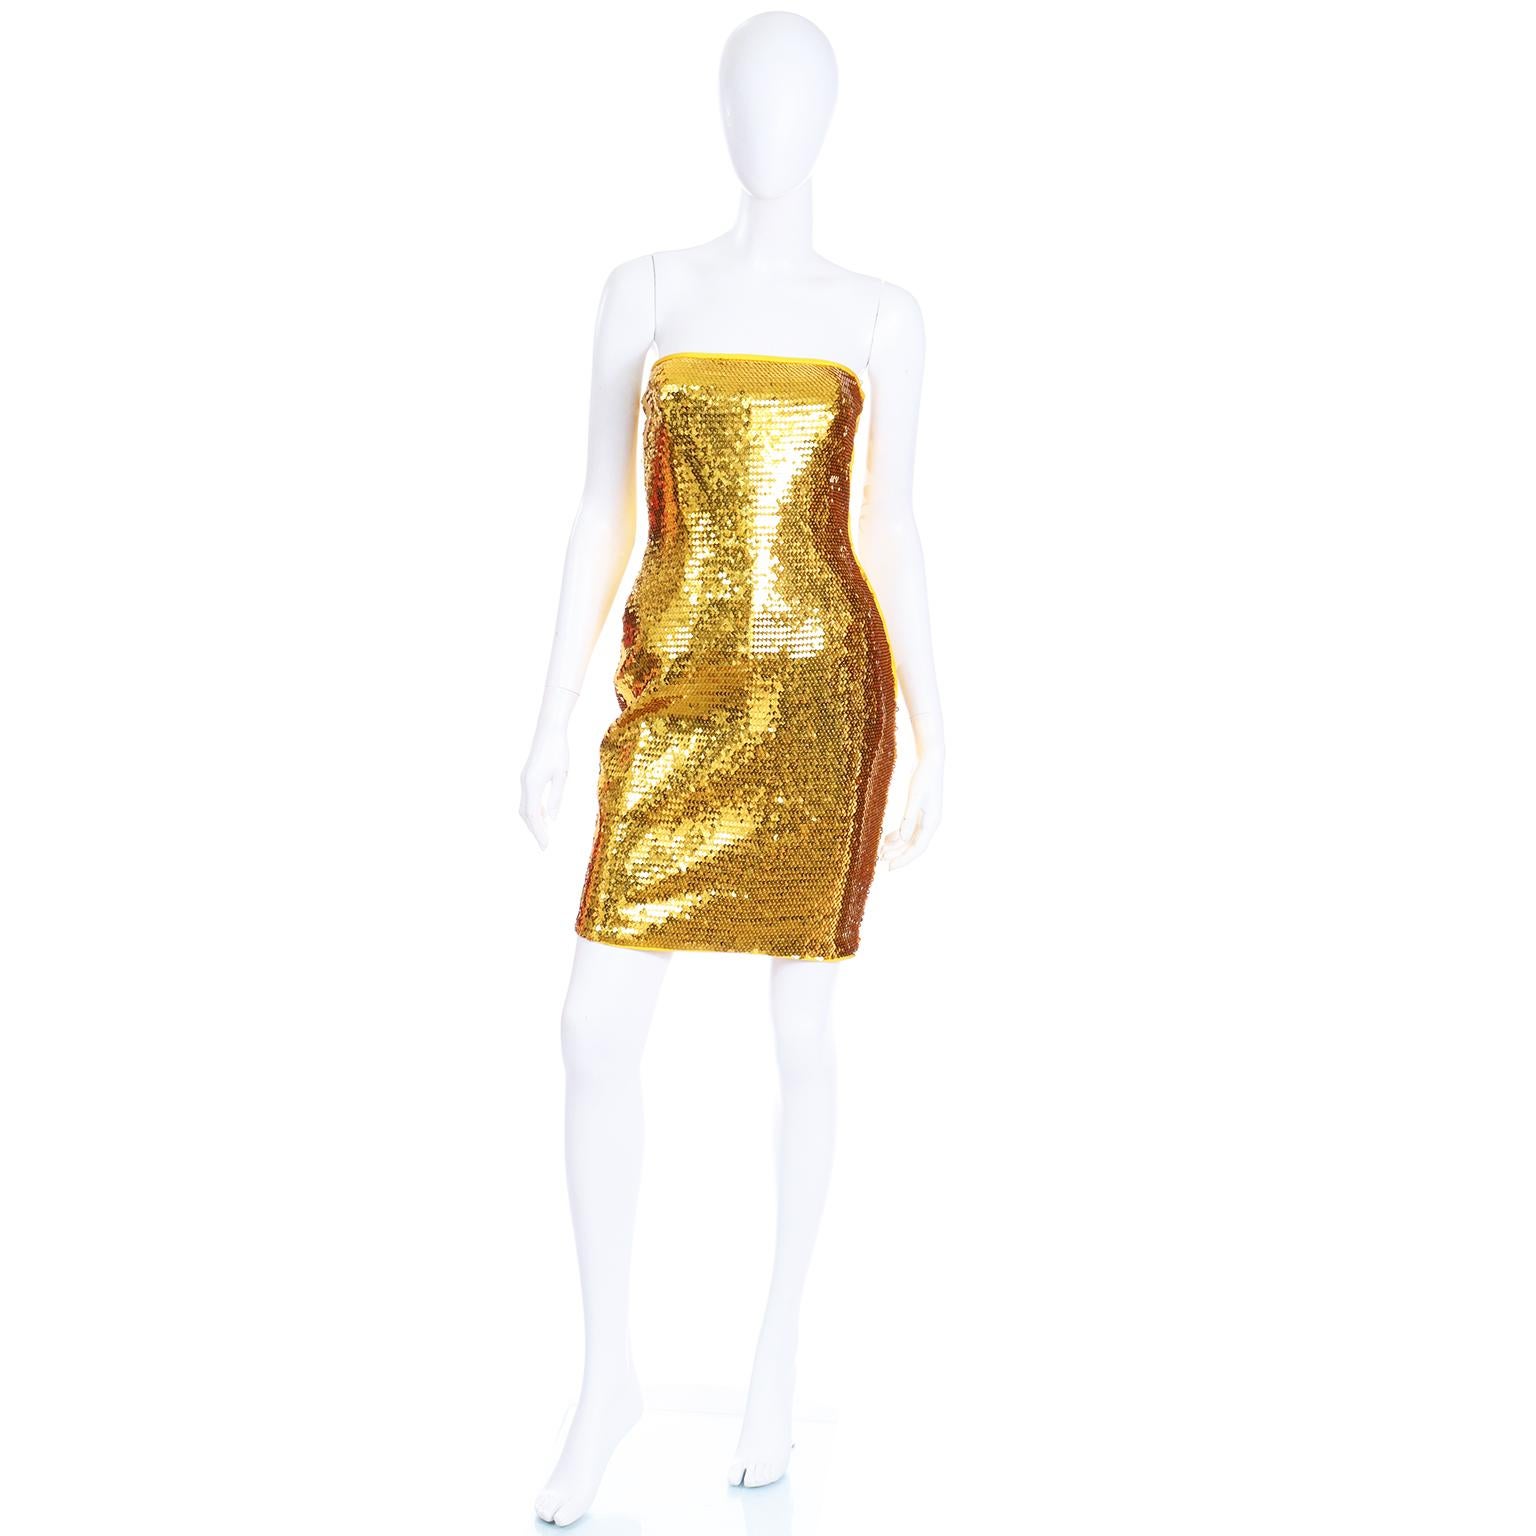 Dies ist eine atemberaubende Vintage Escada Margaretha Ley trägerlosen Abendkleid, das nie getragen worden zu sein scheint. Das Kleid ist vollständig mit leuchtend goldenen Pailletten bedeckt und hat gelbgoldene Paspeln am Oberteil und an den